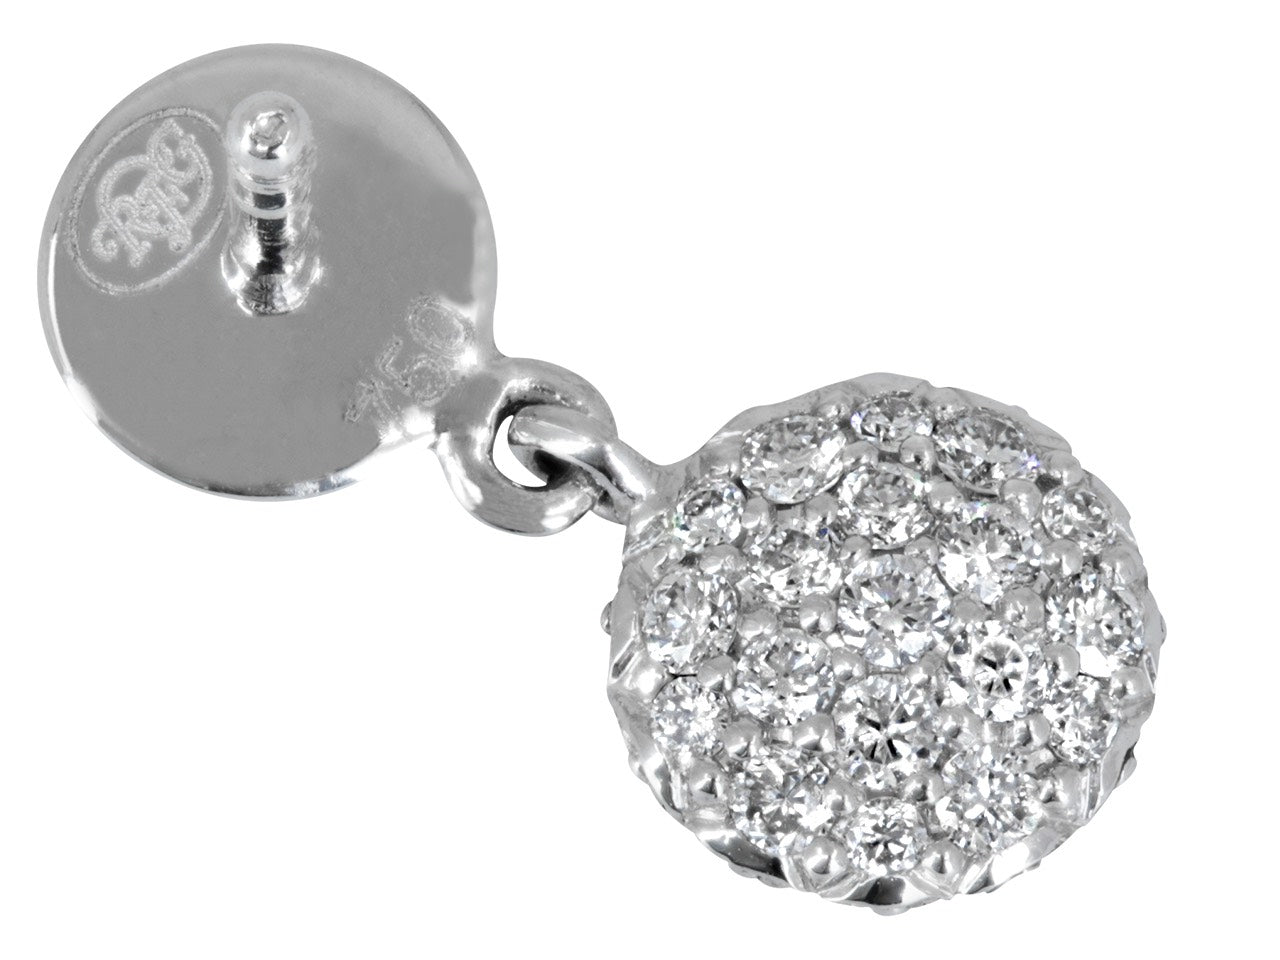 Rhonda Faber Green 'Mini Diamond Dot' Earrings in 18K White Gold